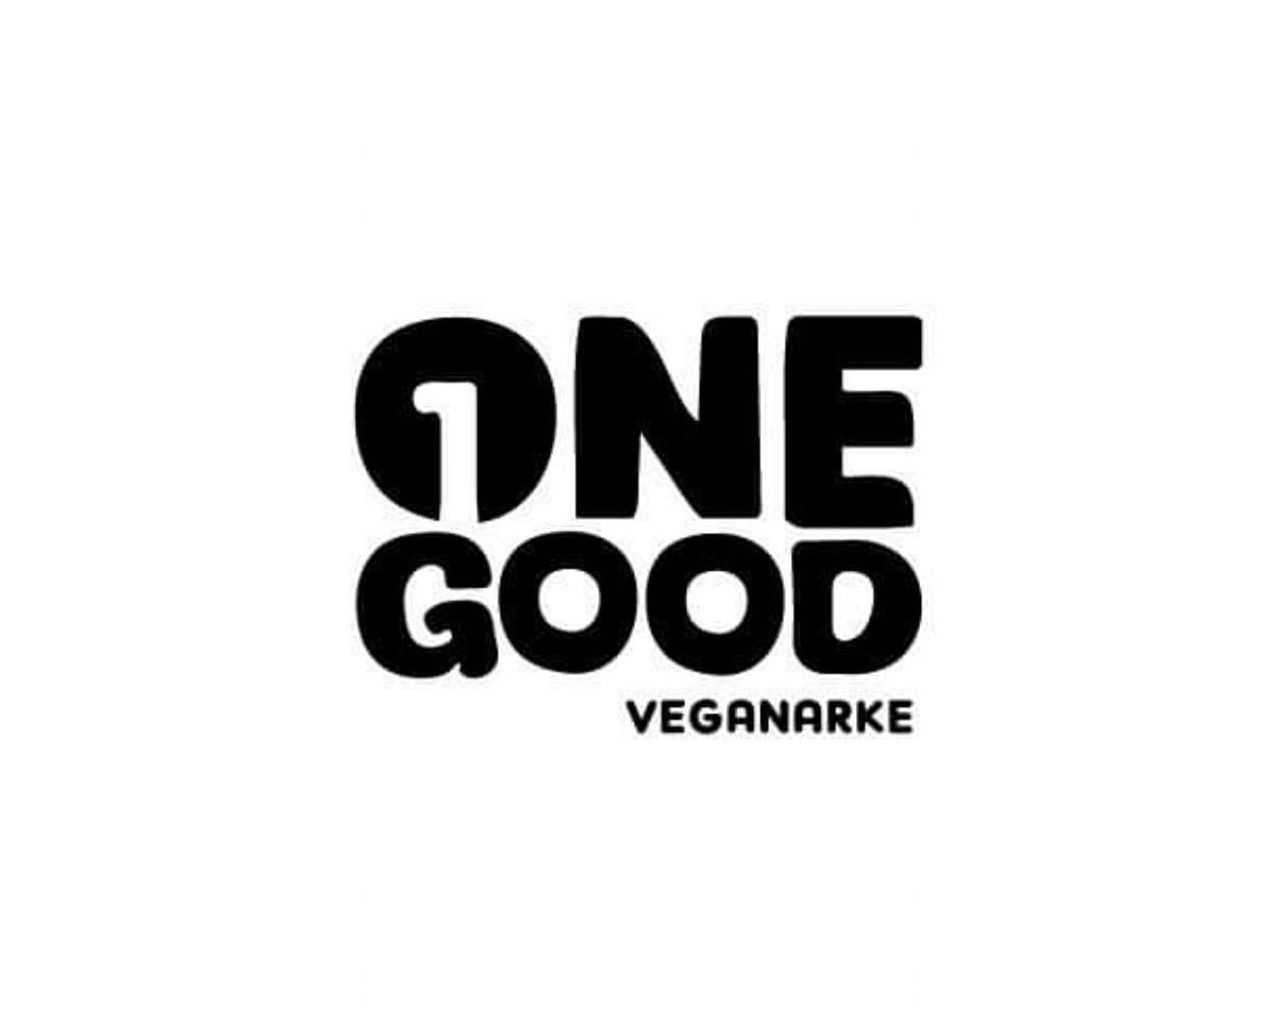 India's Leading Vegan Brand - One Good